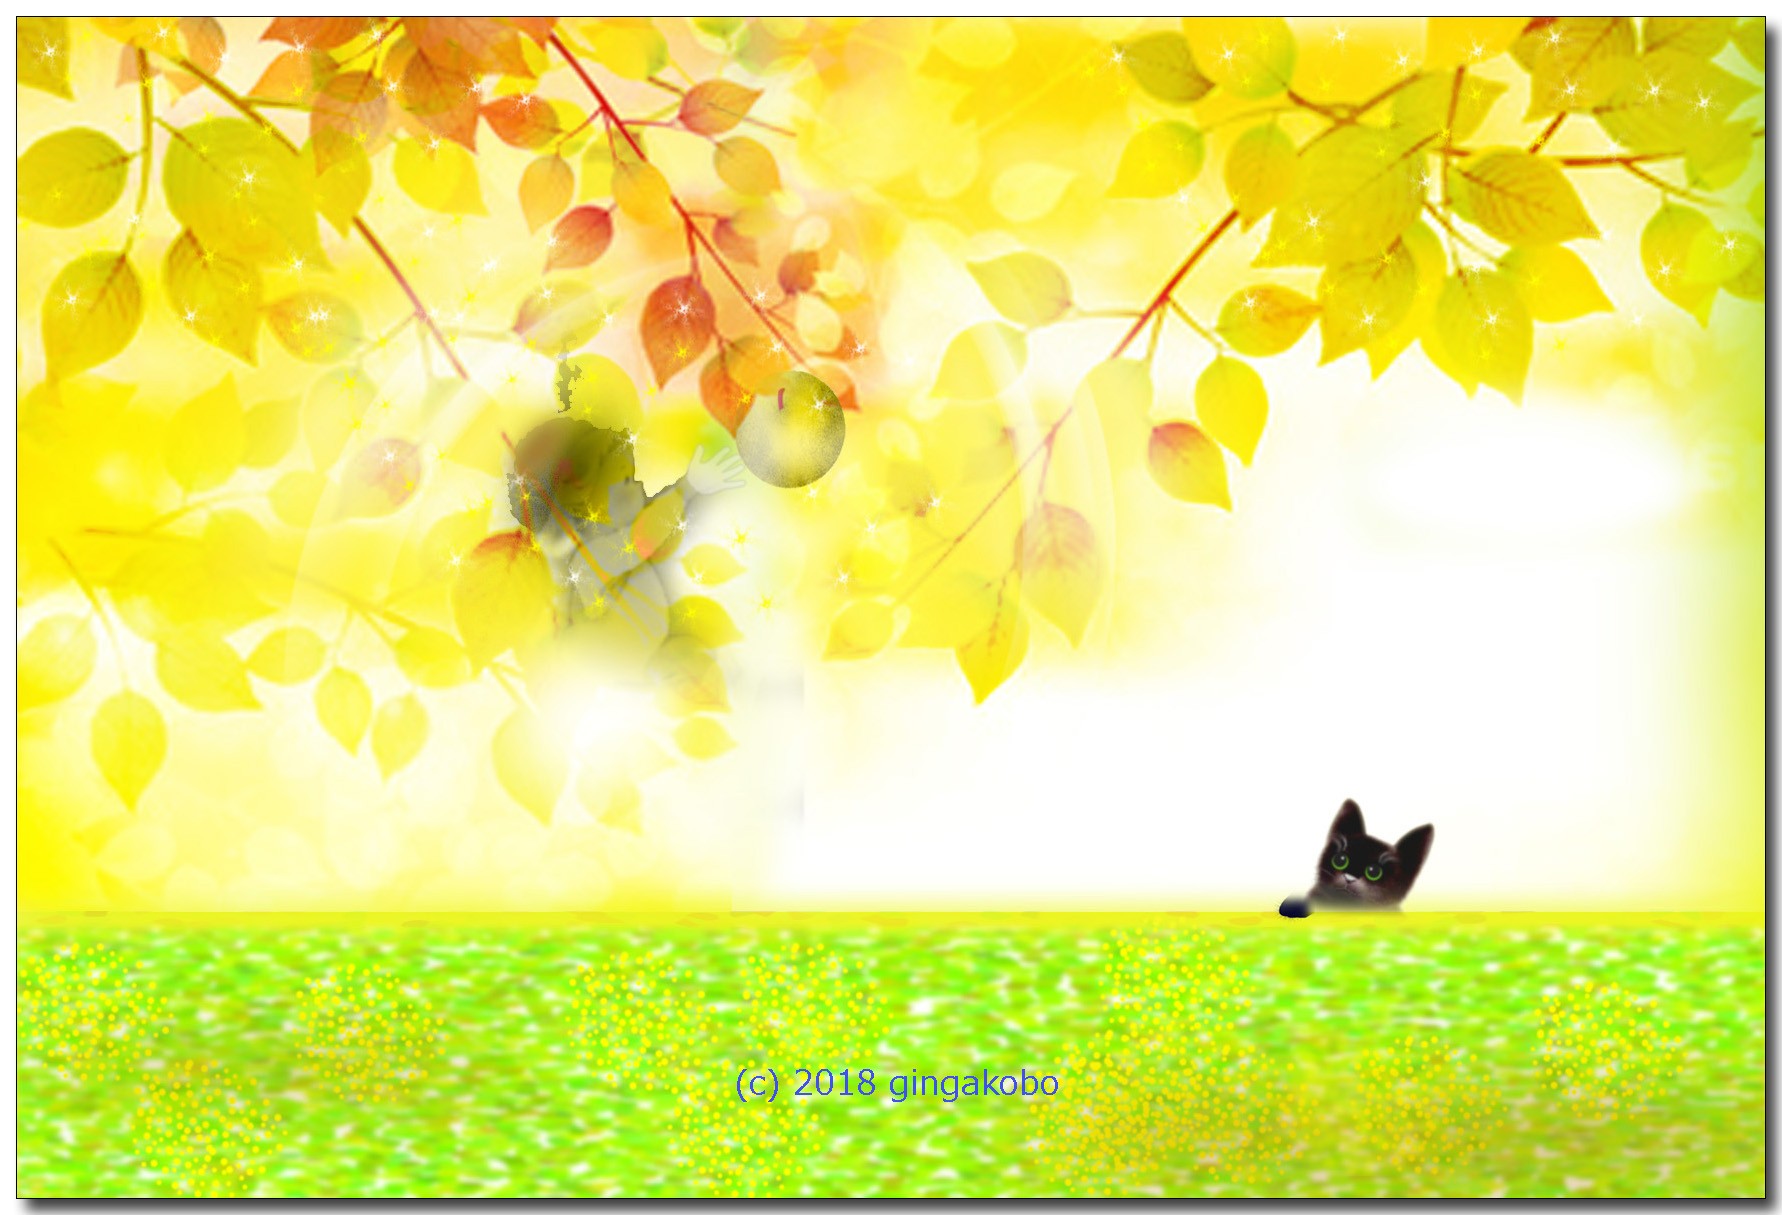 天使と黒猫 ほっこり癒しのイラストポストカード2枚組no 616 Iichi ハンドメイド クラフト作品 手仕事品の通販